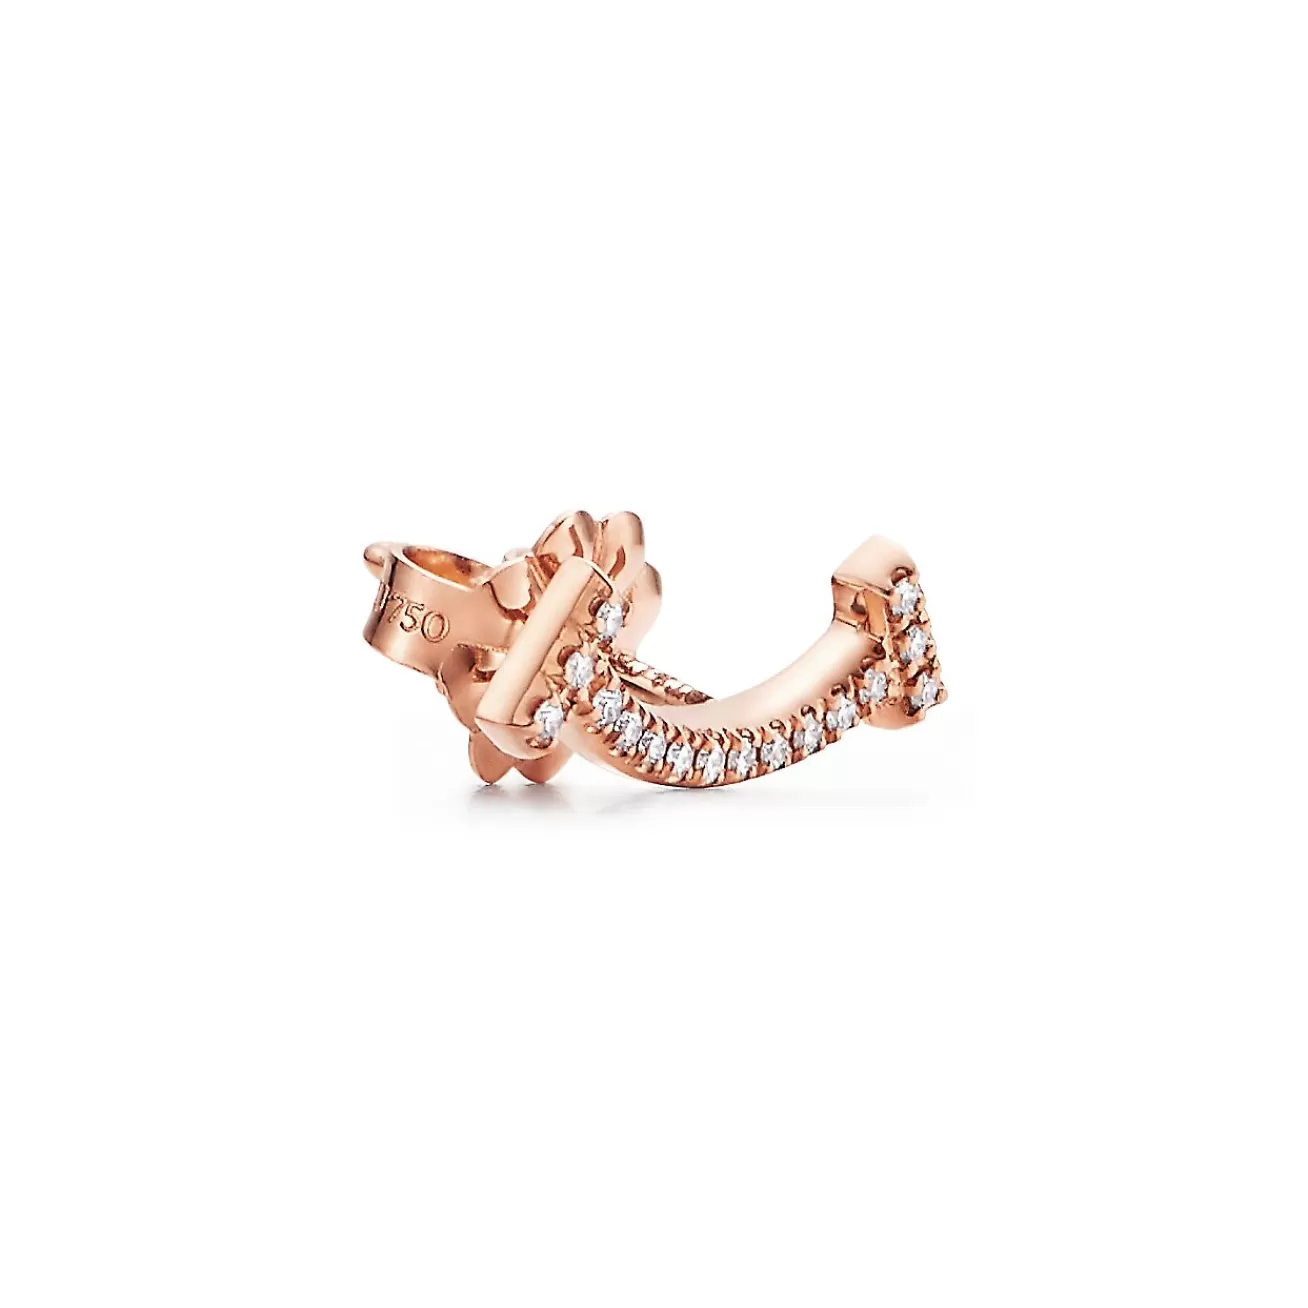 Tiffany & Co. Tiffany T smile earrings in 18k rose gold with diamonds. | ^ Earrings | Dainty Jewelry